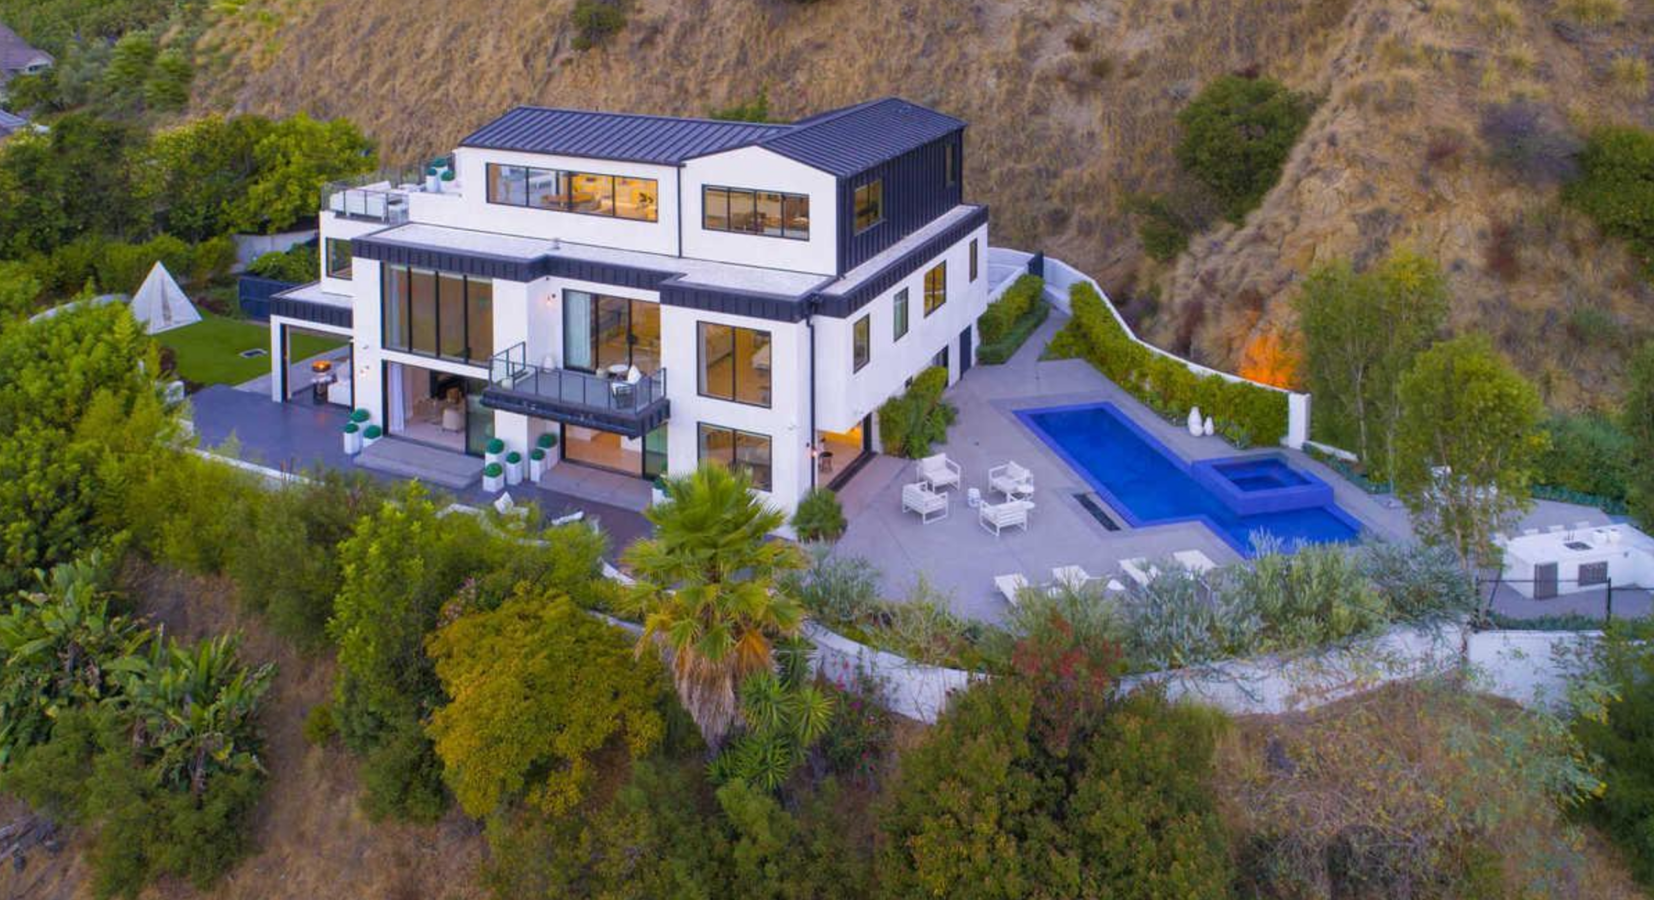 Vista aerea de la casa de Demi Lovato en Los Angeles